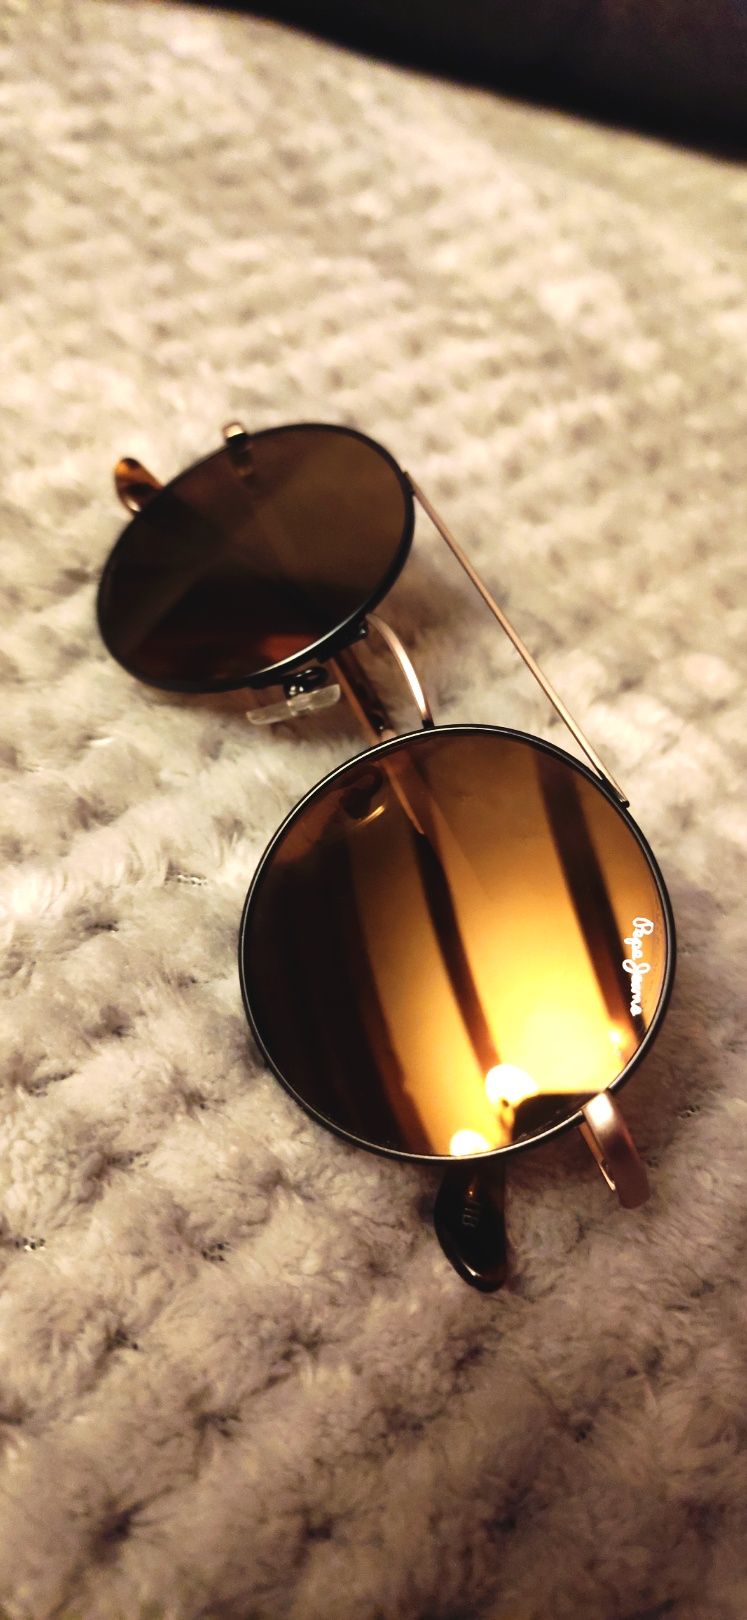 Złote okulary nowe Pepe Jeans brązowe szkła z filtrem UV